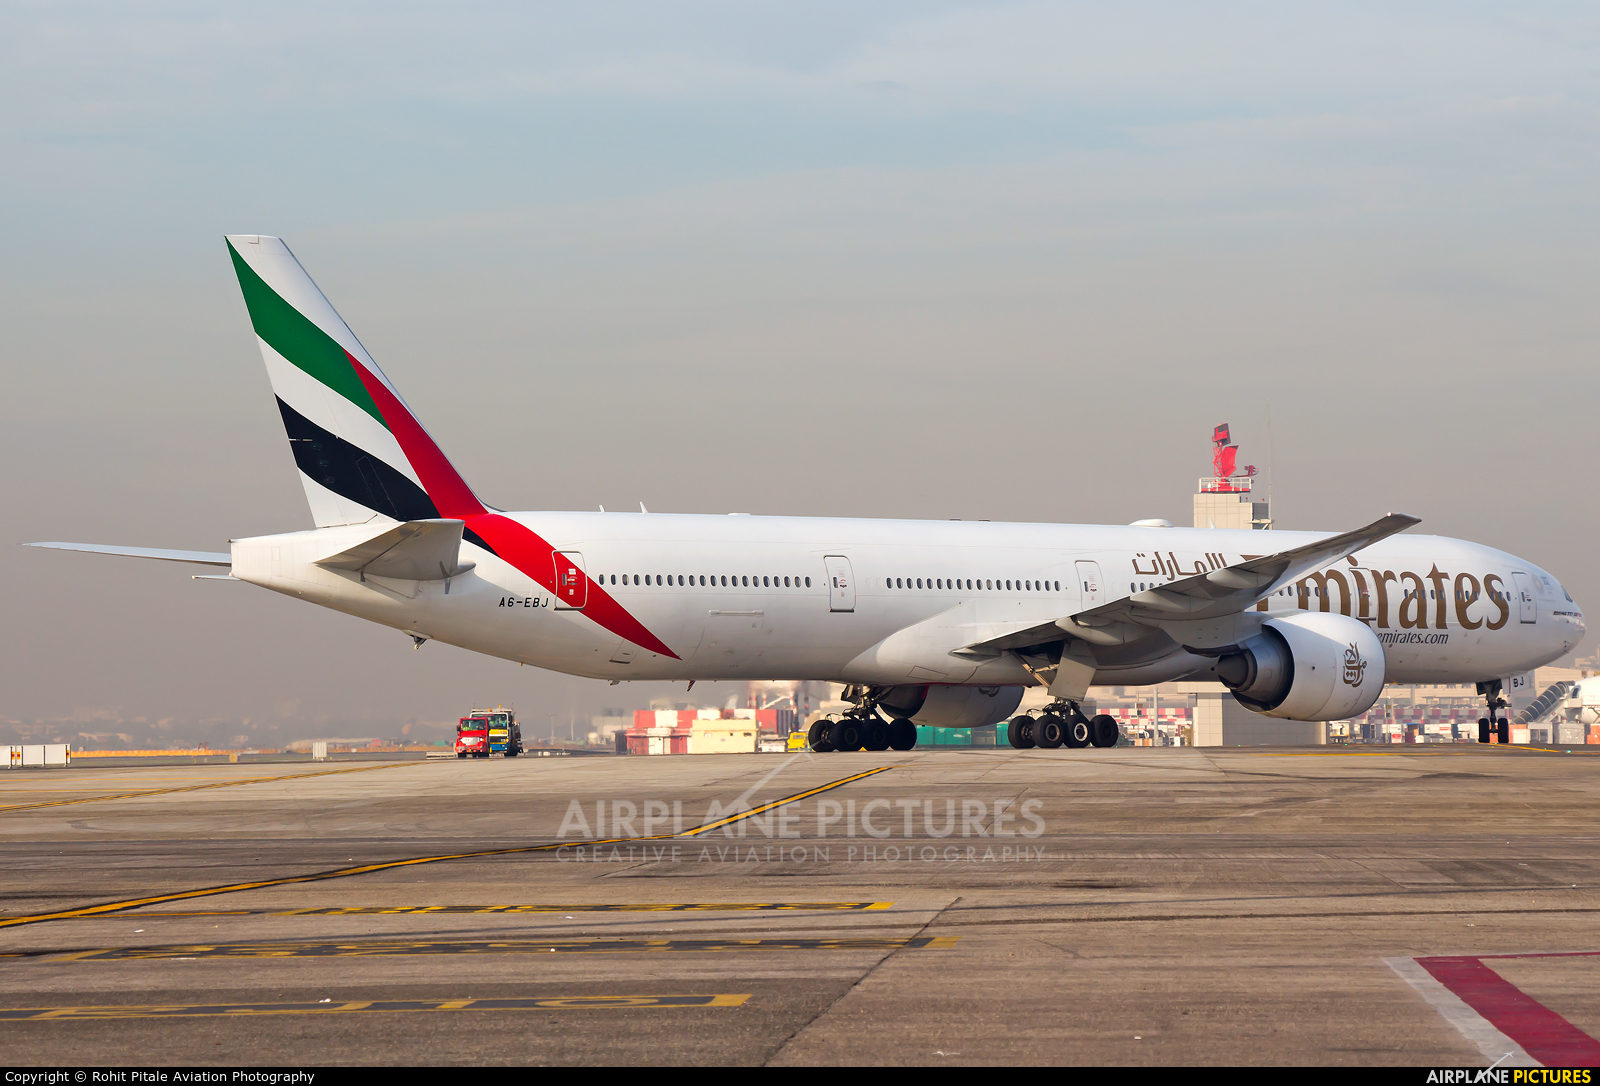 Emirates Airlines A6-EBJ aircraft at Mumbai - Chhatrapati Shivaji Intl